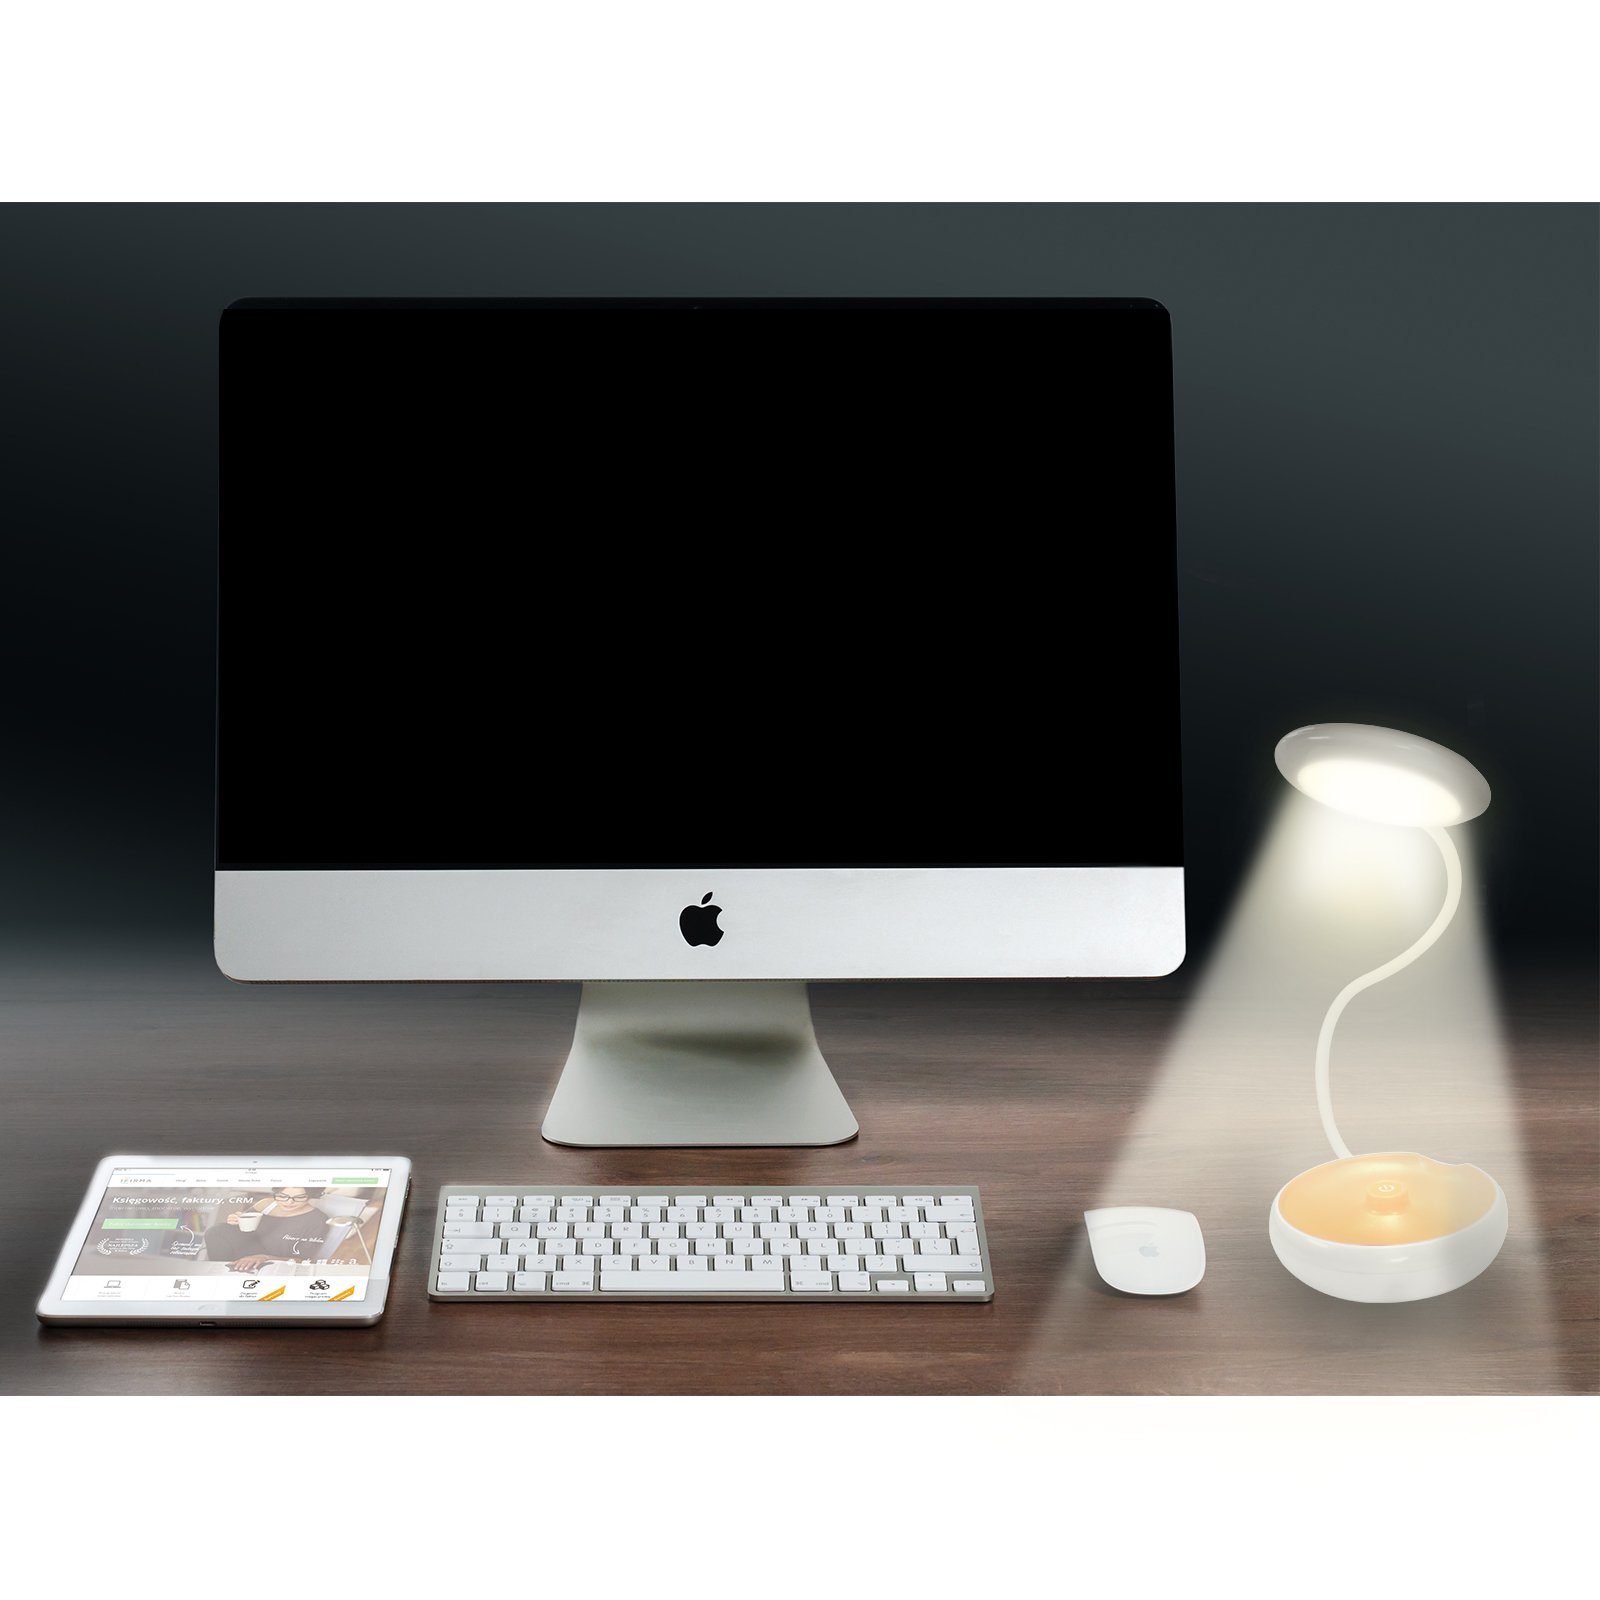 fest Tischleuchte EAXUS Schreibtischlampe - Nachttischlampe Batterie, Taschenlampe Schreibtischleuchte flexible integriert, 3in1 + LED Nachtlicht LED + USB LED oder